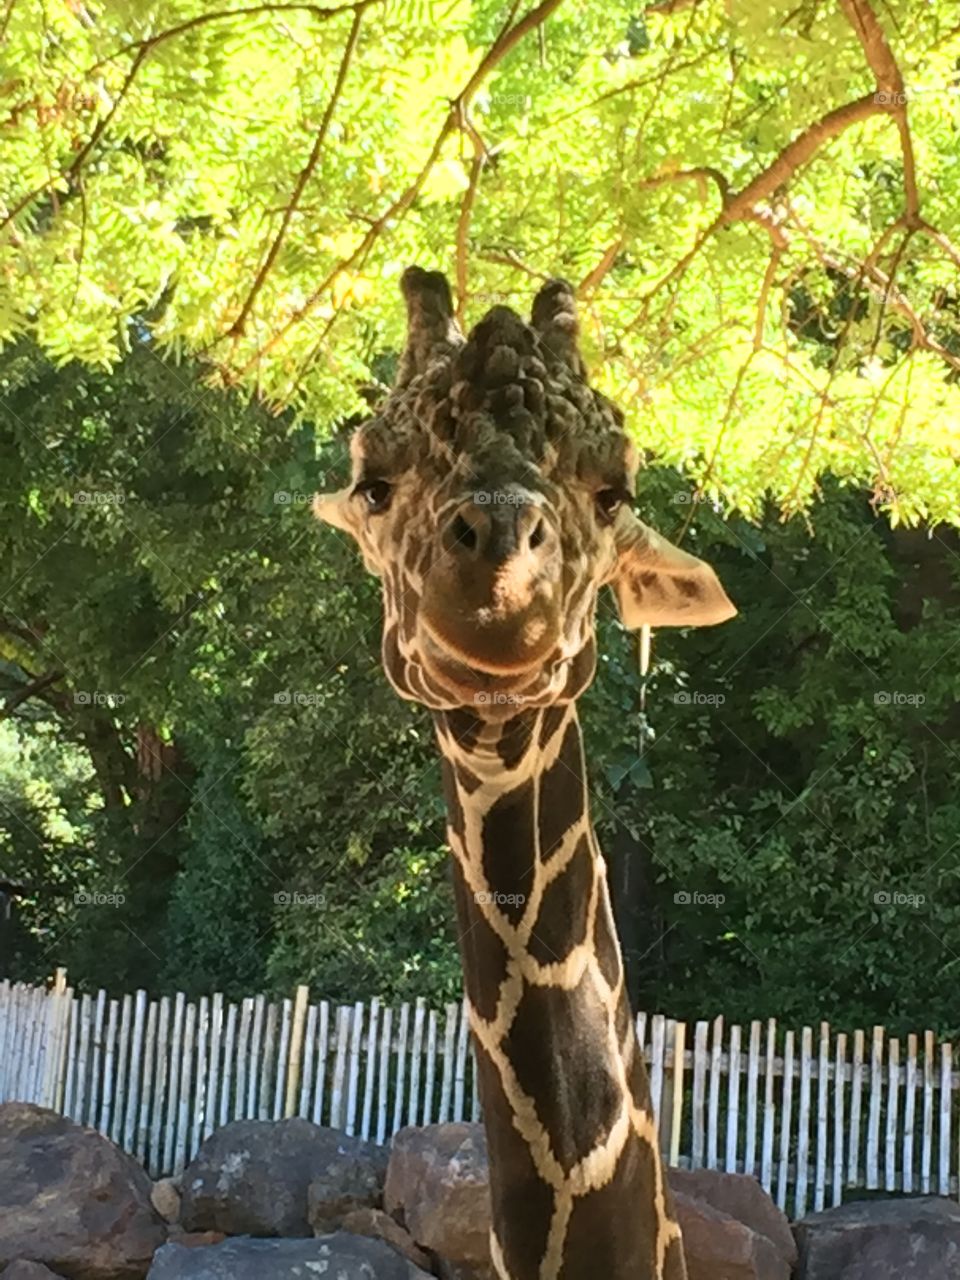 Zoo Atlanta - here's looking at you!